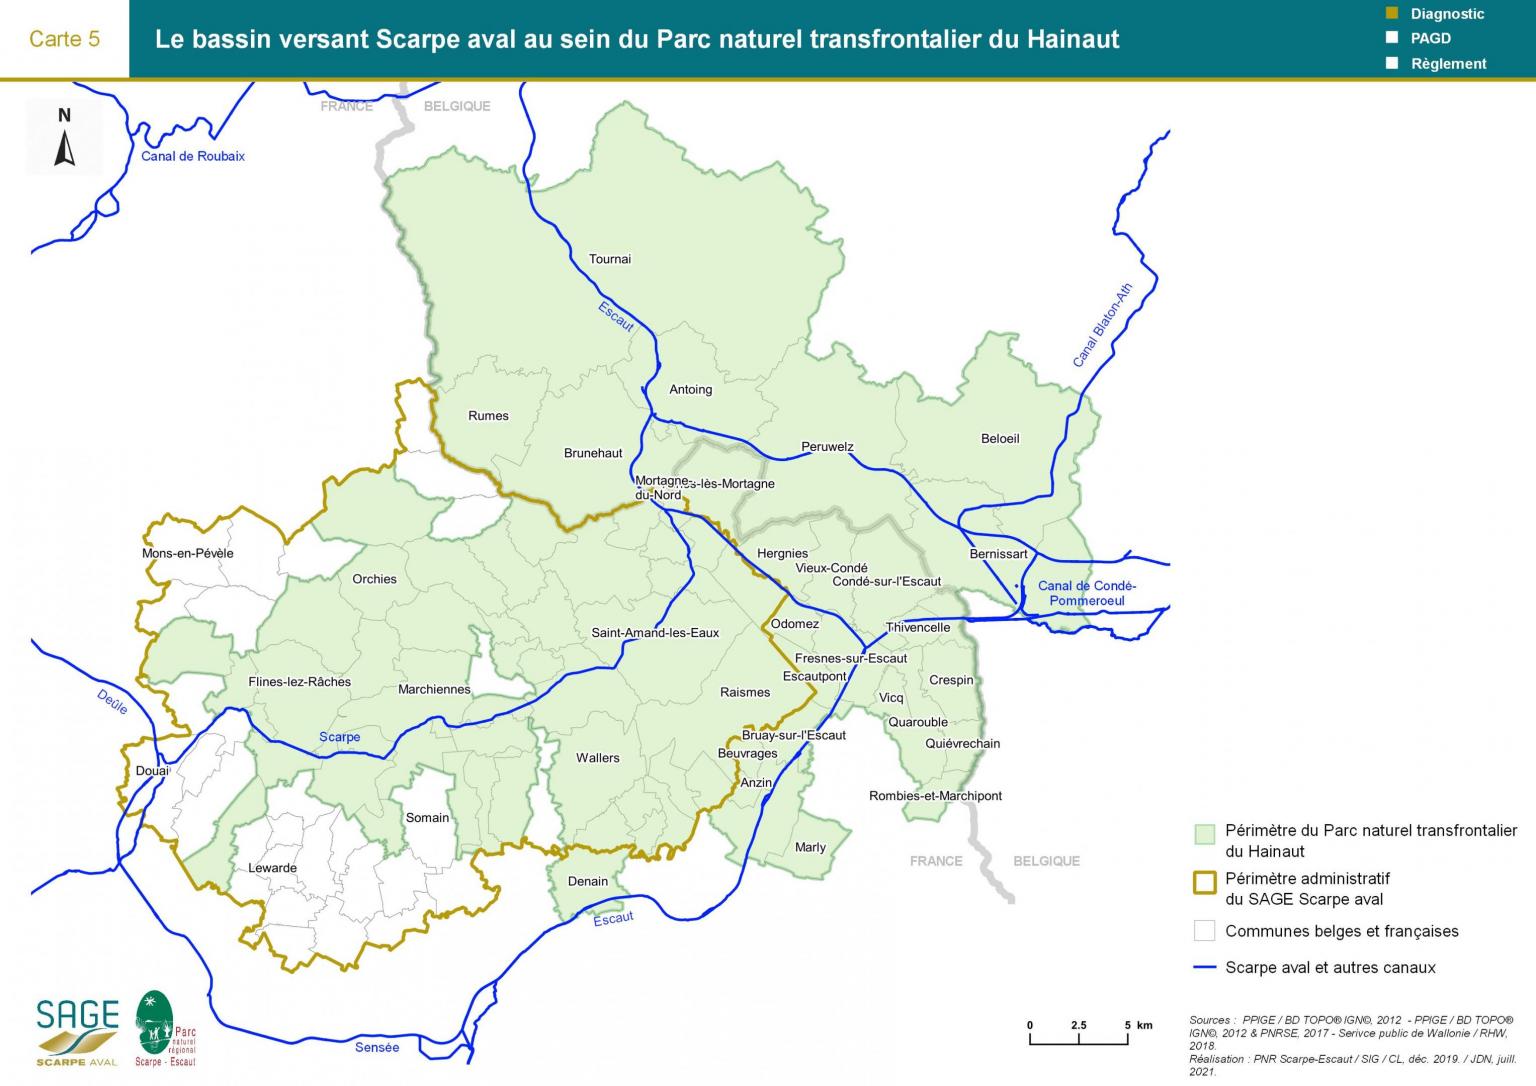 Etat des lieux - Carte 5 : Le bassin versant Scarpe aval au sein du Parc naturel transfrontalier du Hainaut